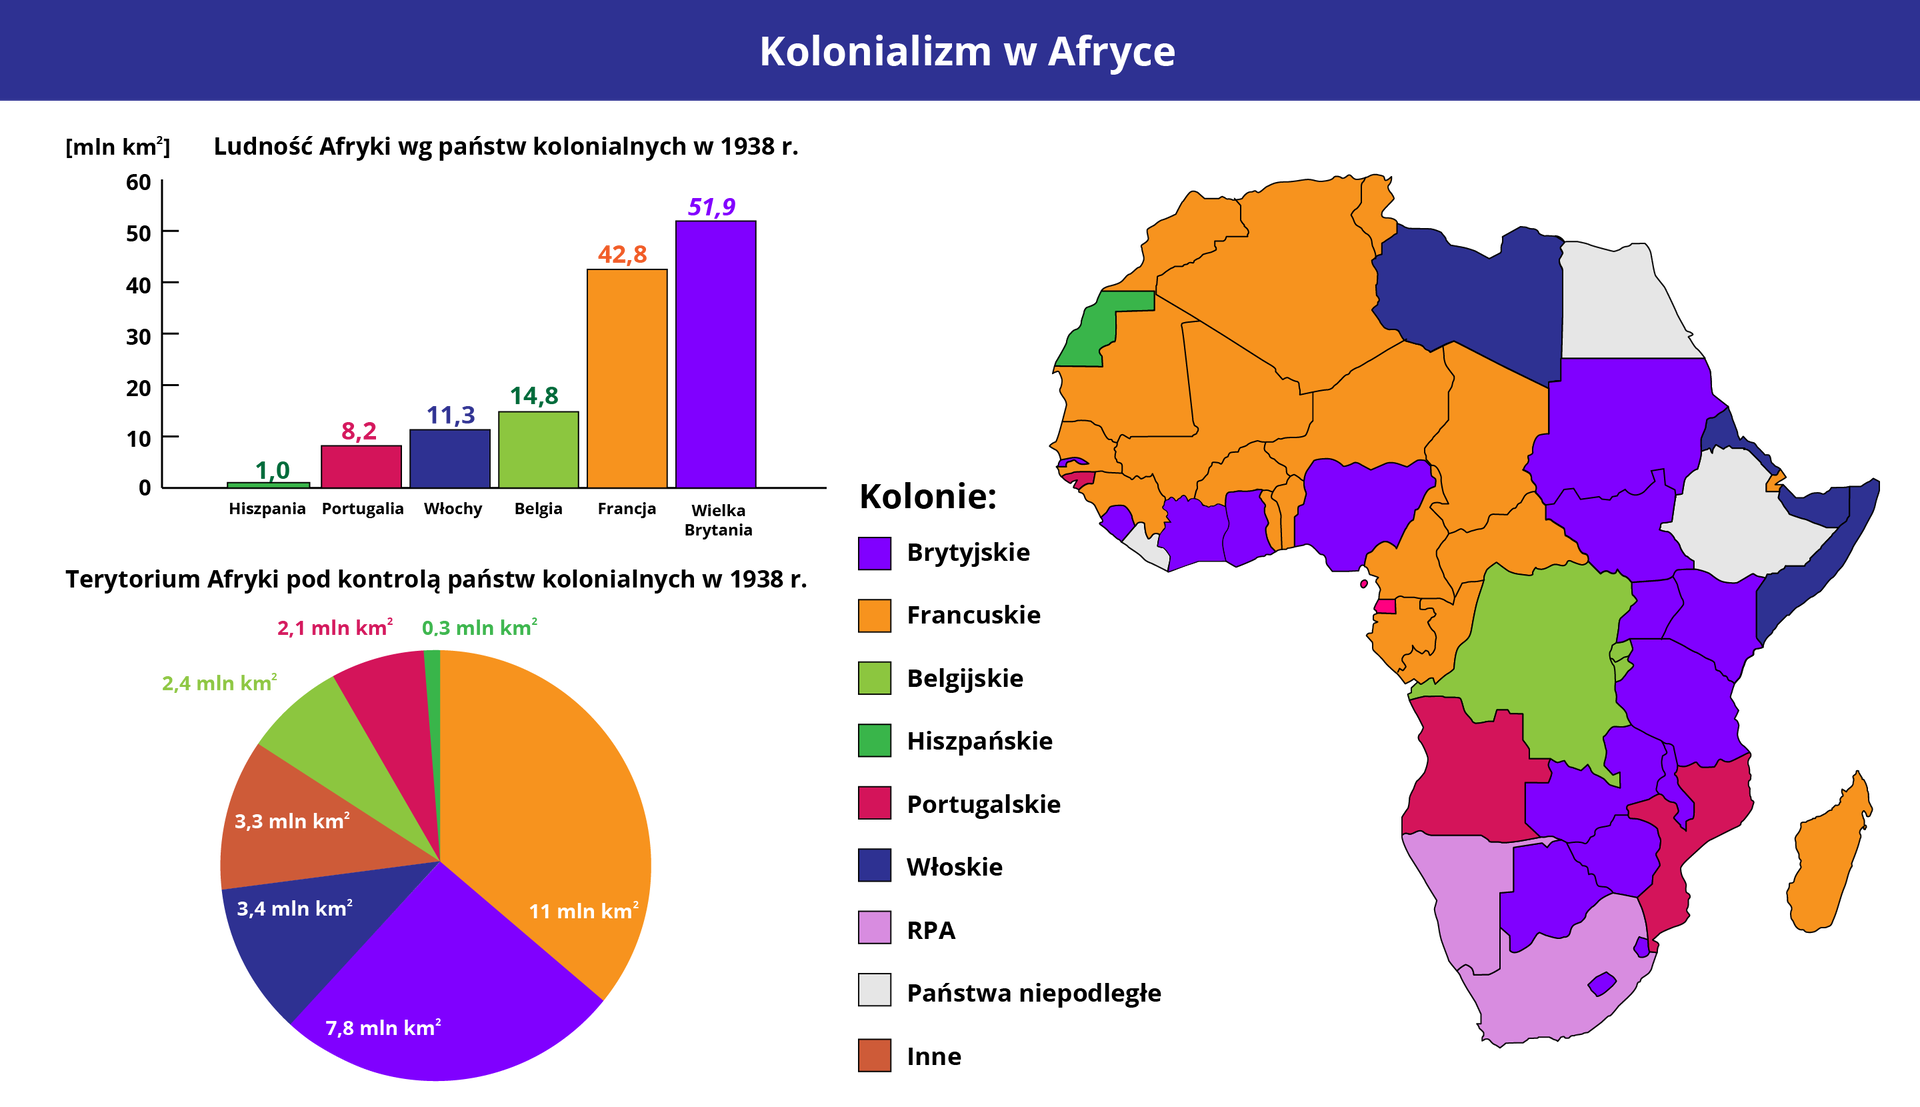 Ilustracja przedstawia dane dotyczące kolonializmu w Afryce. Pierwszy po lewej znajduje się wykres słupkowy Ludność Afryki według państw kolonialnych w 1938 roku. Podano dane: Wielka Brytania 51,9 miliona, Francja 42,8 miliona, Belgia 14,8 miliona, Włochy 11,3 miliona, Portugalia 8,2 miliona, Hiszpania jeden milion. Poniżej znajduje się wykres kołowy prezentujący Terytorium Afryki pod kontrolą państw kolonialnych w 1938 roku. Podano dane:  Francja 11 milionów kilometrów kwadratowych, Wielka Brytania 7,8 miliona kilometrów kwadratowych, Włochy 3,4 miliona kilometrów kwadratowych, inne 3,3 miliona kilometrów kwadratowych, Belgia 2,4 miliona kilometrów kwadratowych, Portugalia 2,1 miliona kilometrów kwadratowych,  Hiszpania 0,3 miliona kilometrów kwadratowych. Po prawej od wykresów zamieszczono mapkę Afryki z zaznaczeniem kolorami obszarów kolonii poszczególnych państw kolonialnych. Kolonie francuskie zaznaczono na pomarańczowo. Obejmują one na mapce większość Afryki północno-zachodniej oraz Madagaskar. Kolonie brytyjskie, zaznaczone na fioletowo, to kilka państw u Wybrzeża Kości Słoniowej oraz państwa w pionowym pasie ciągnącym się poniżej Egiptu aż nad RPA. Kolonie belgijskie oznaczone na zielono zajmują tereny Demokratycznej Republiki Konga, Rwandy i Burundi. Kolonie hiszpańskie, zaznaczone na jasnozielono, to teren Sahary Zachodniej. Kolonie portugalskie - na różowo - to  głównie Angola i Mozambik. Jasnofioletowym zaznaczono RPA i Namibię. Kolor biały mają państwa oznaczone jako niepodległe - Egipt, Etiopia i Liberia.    